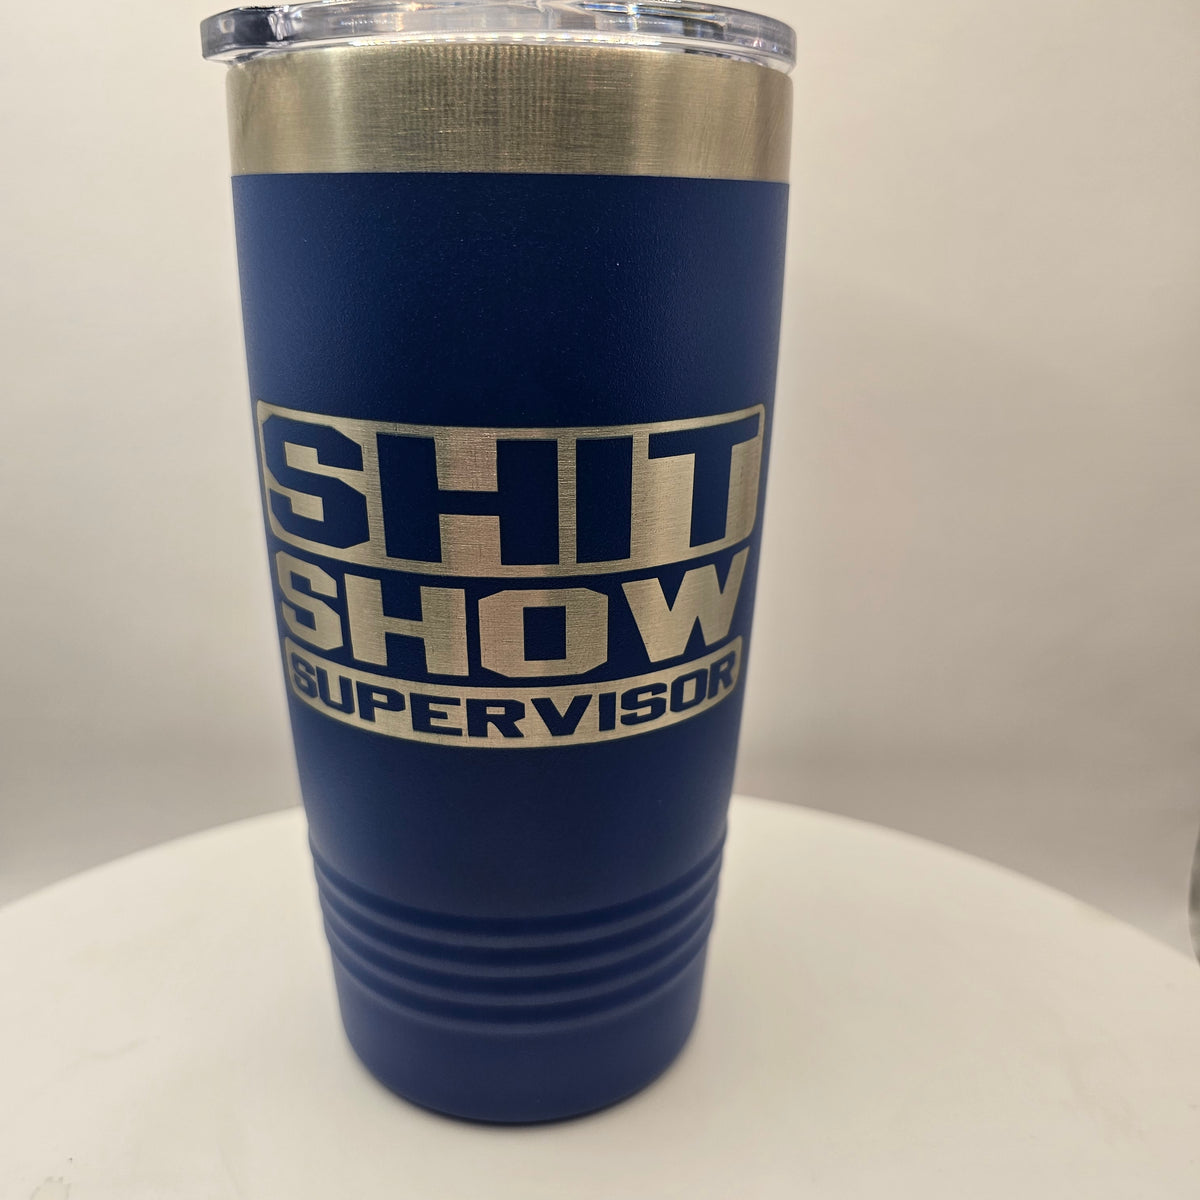 Shit show Supervisor